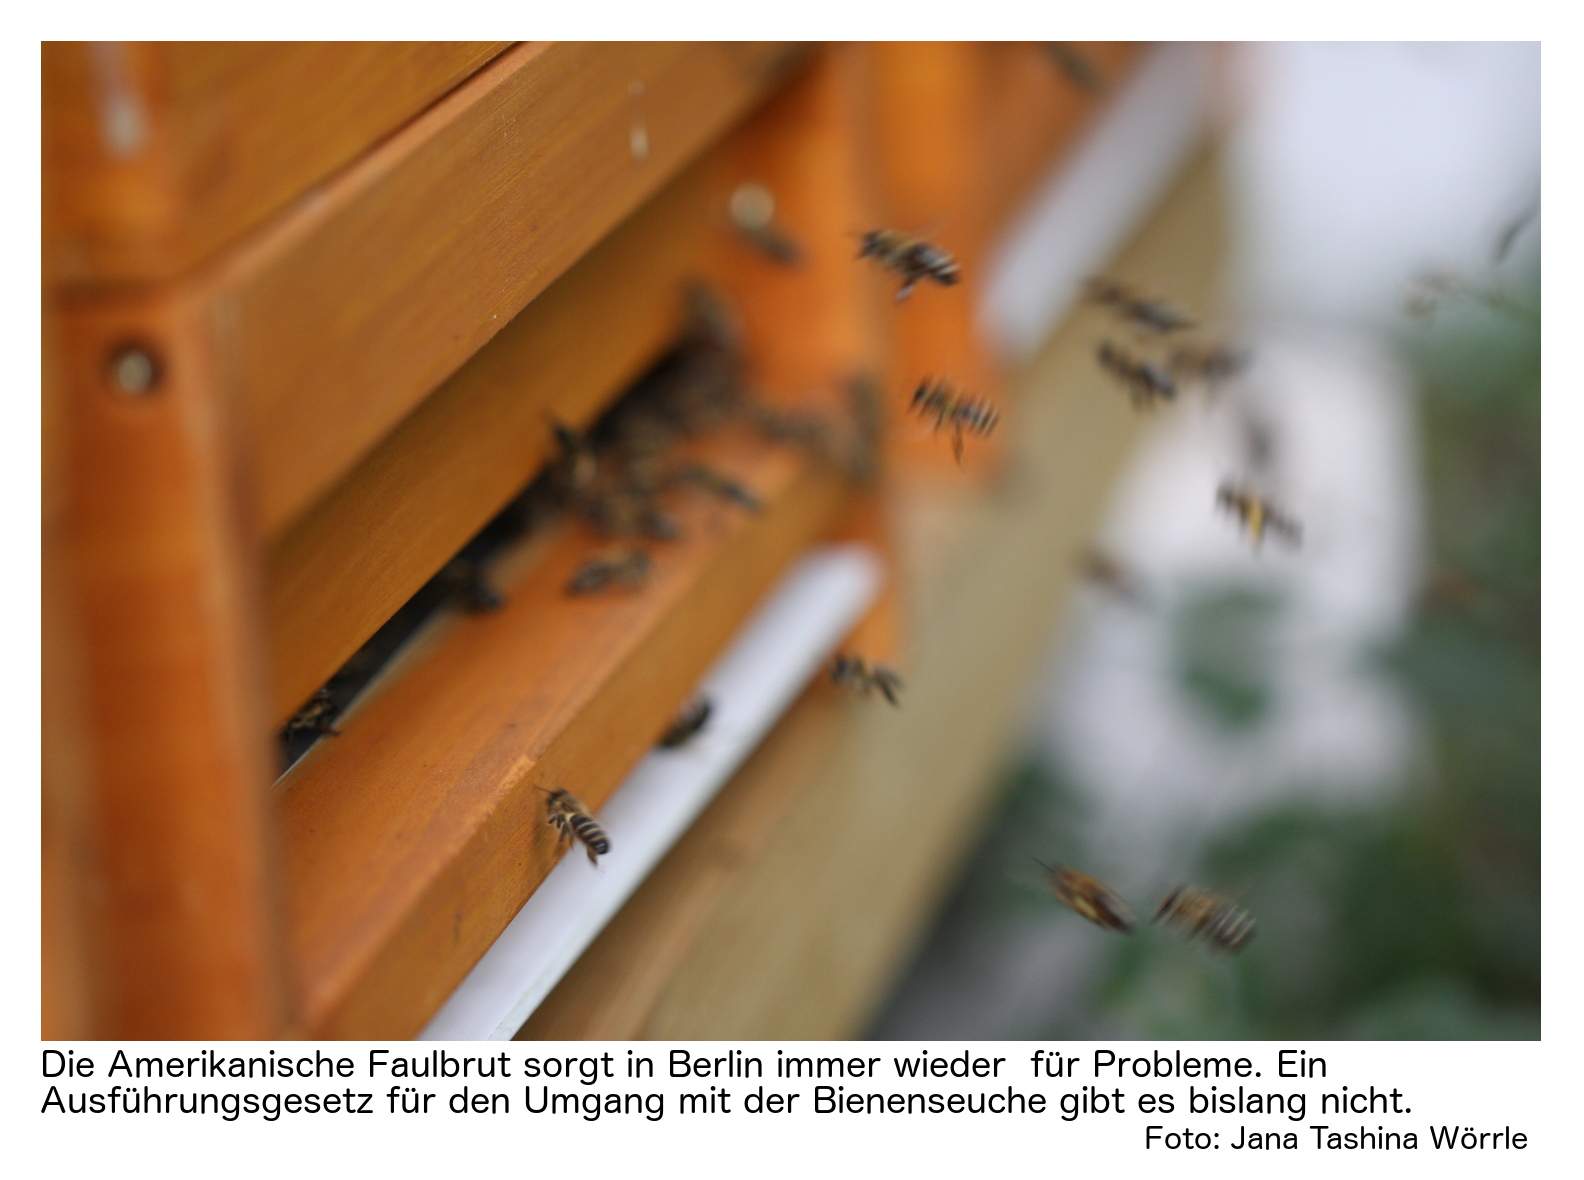 Bienen Im Garten Halten Inspirierend Amerikanische Faulbrut Wenn Fehlende Vorschriften Zum